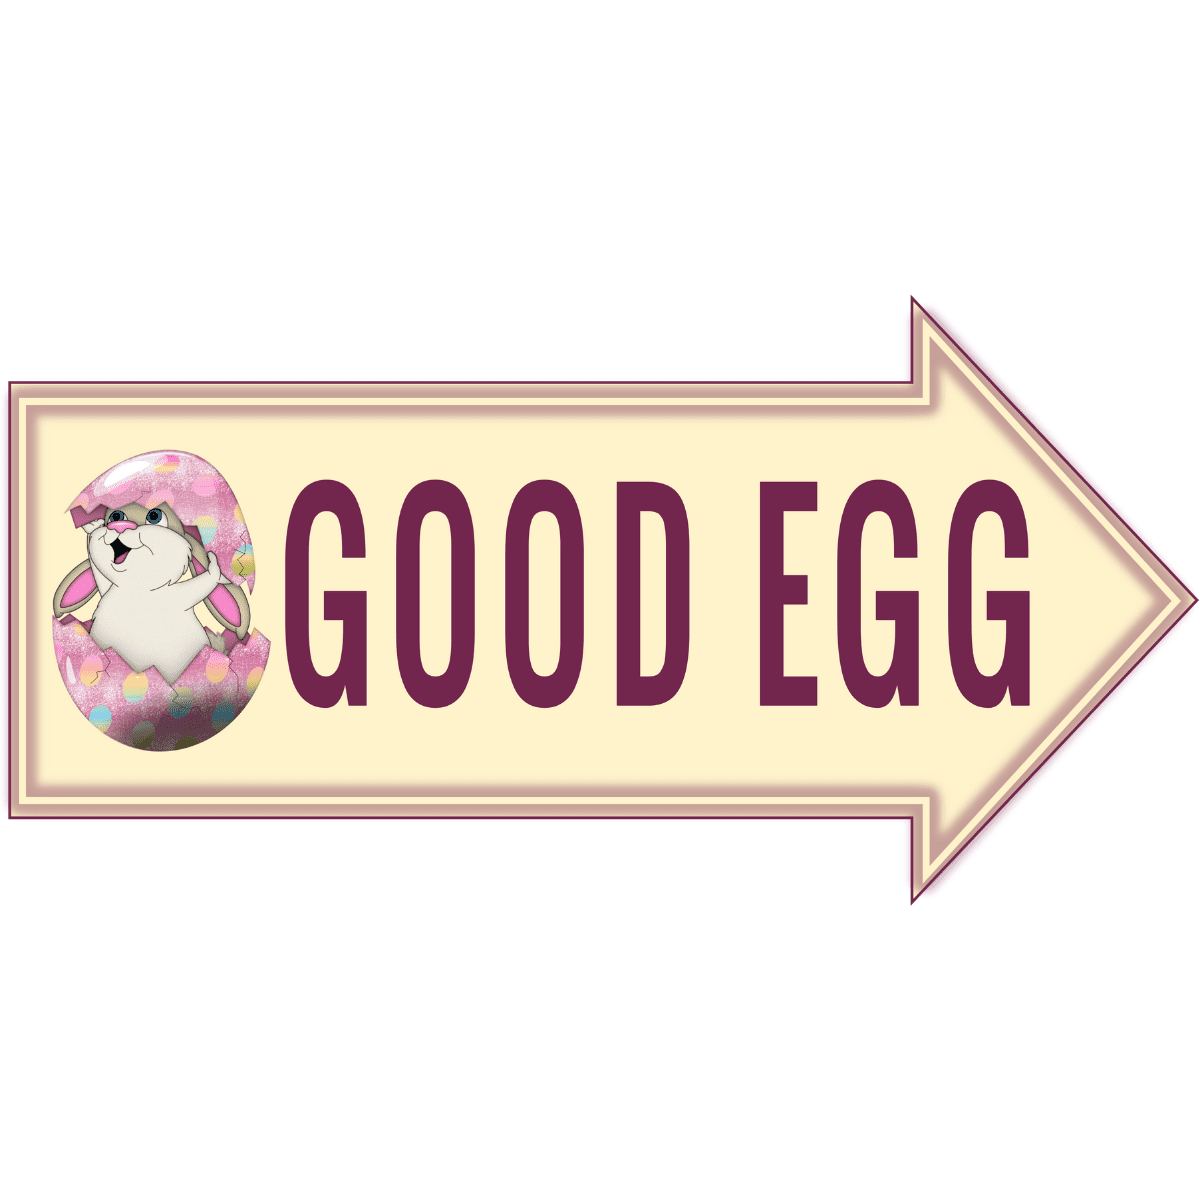 Good-Egg